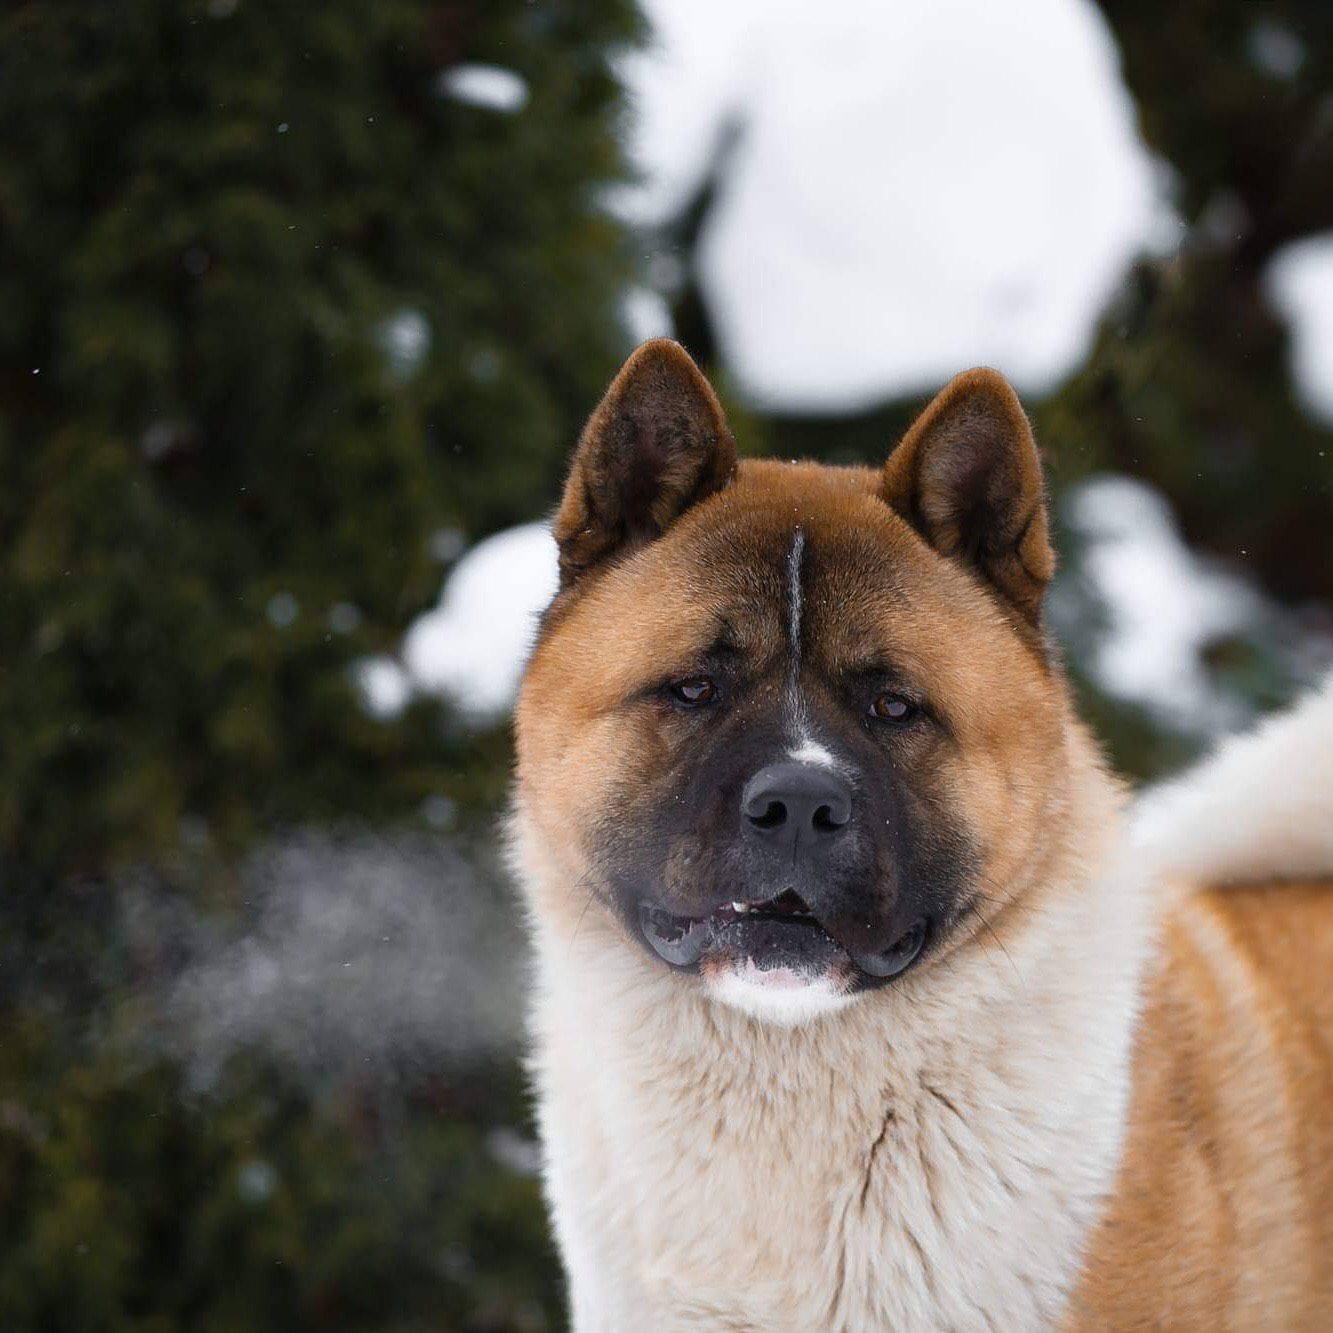 Американская акита (акита матаги или большая японская собака): фото, купить, видео, цена, содержание дома